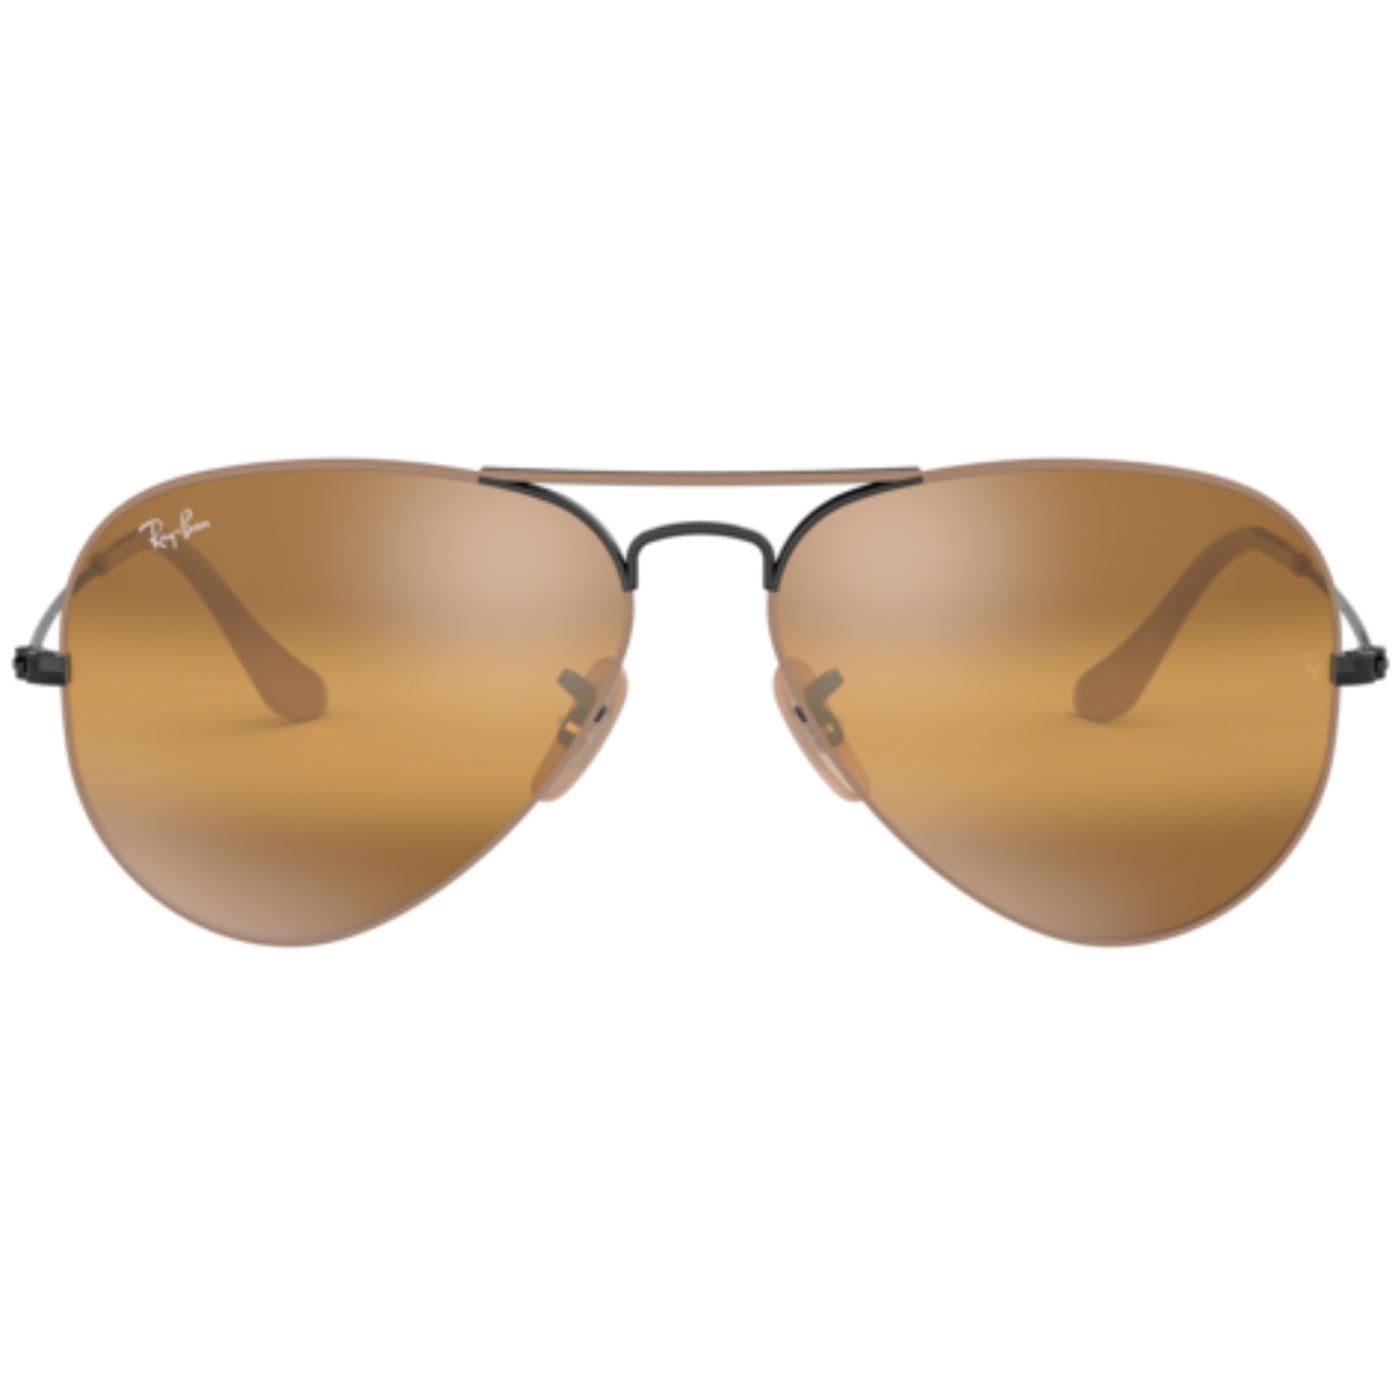 Ray Ban Aviator Sunglasses Size Chart